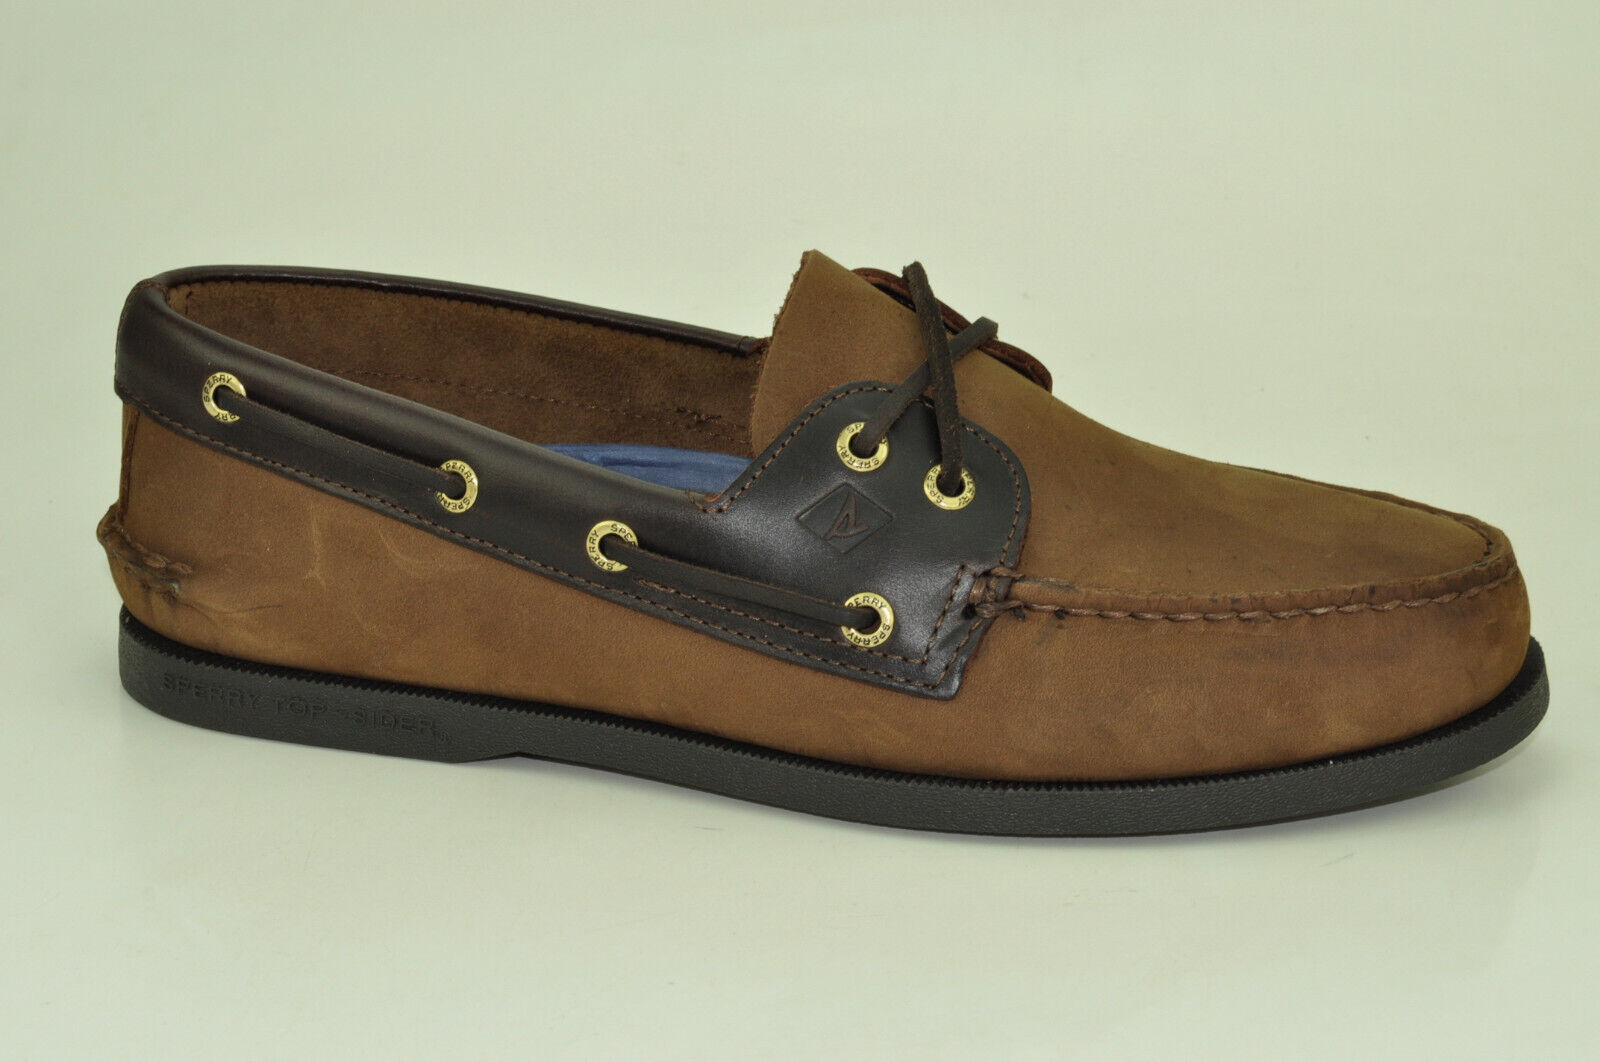 Sperry Top Sider A/O 2-Eye Boat Shoes Herren Deckschuhe Segelschuhe 0195412 Schuhgröße EUR 47,5 US 13